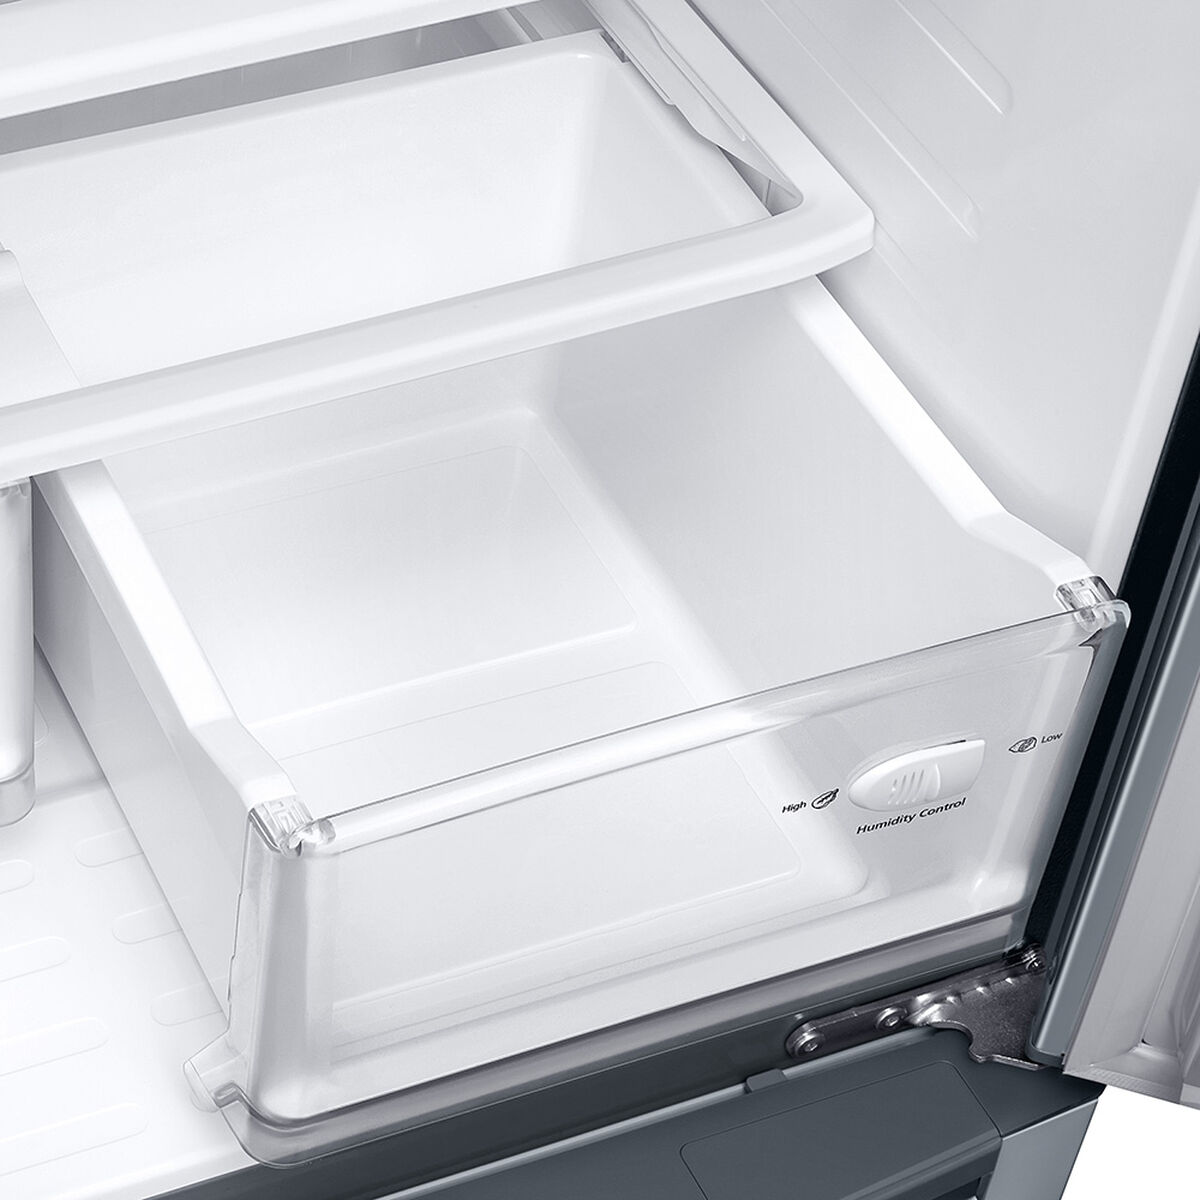 Refrigerador No Frost Samsung RF62HESL/ZS 441 lts.